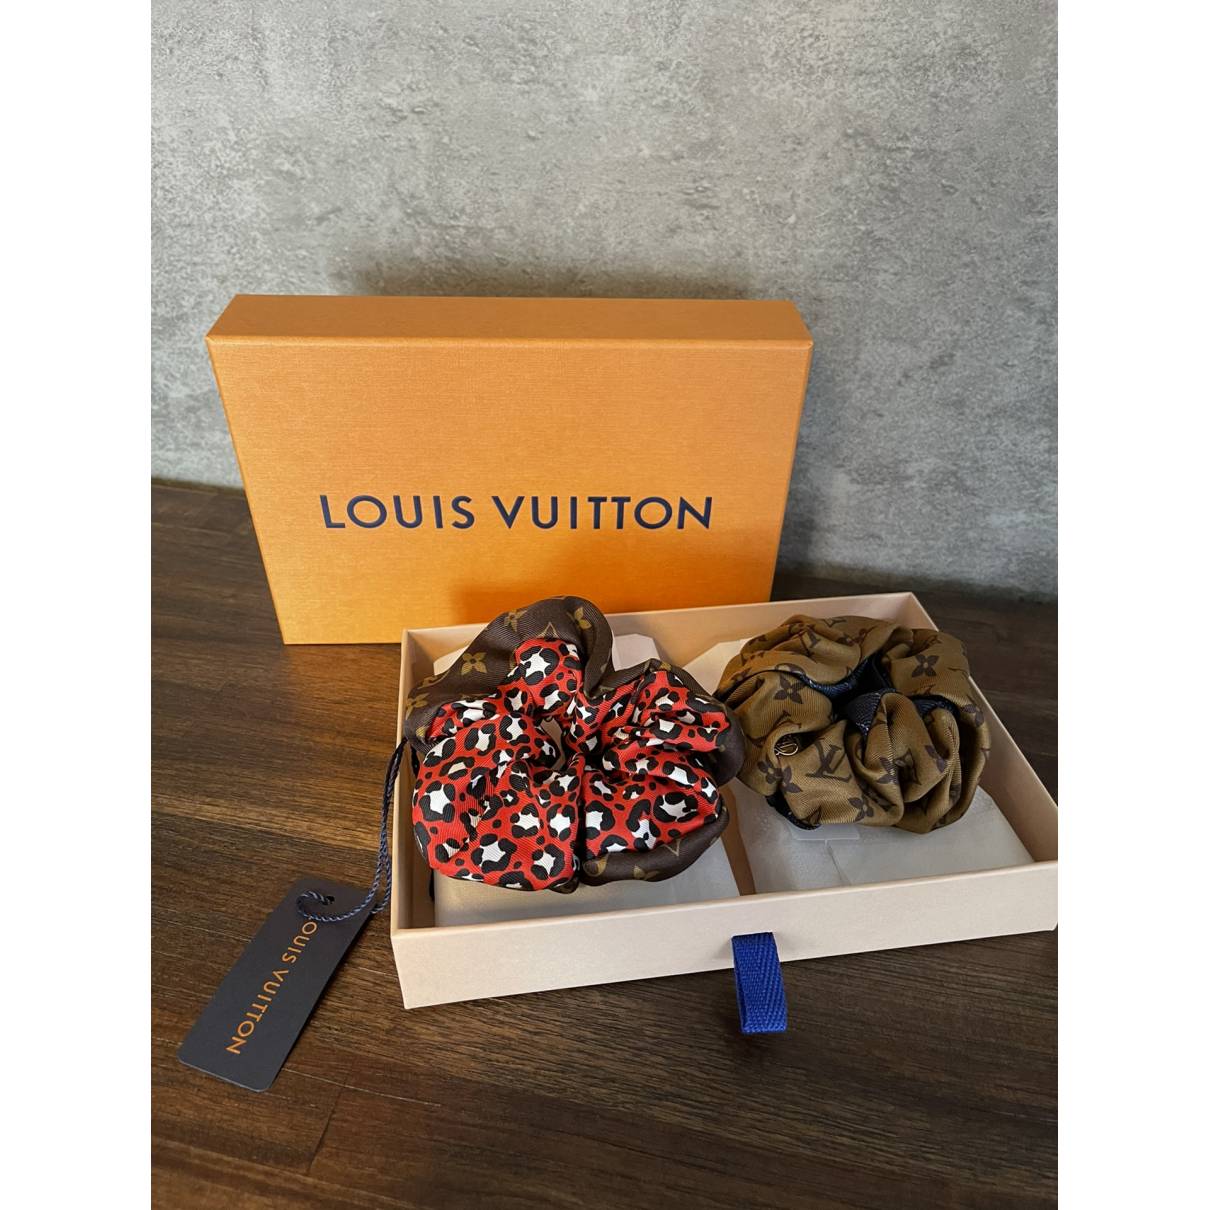 Louis Vuitton Hair Ties Hair Accessories for Women